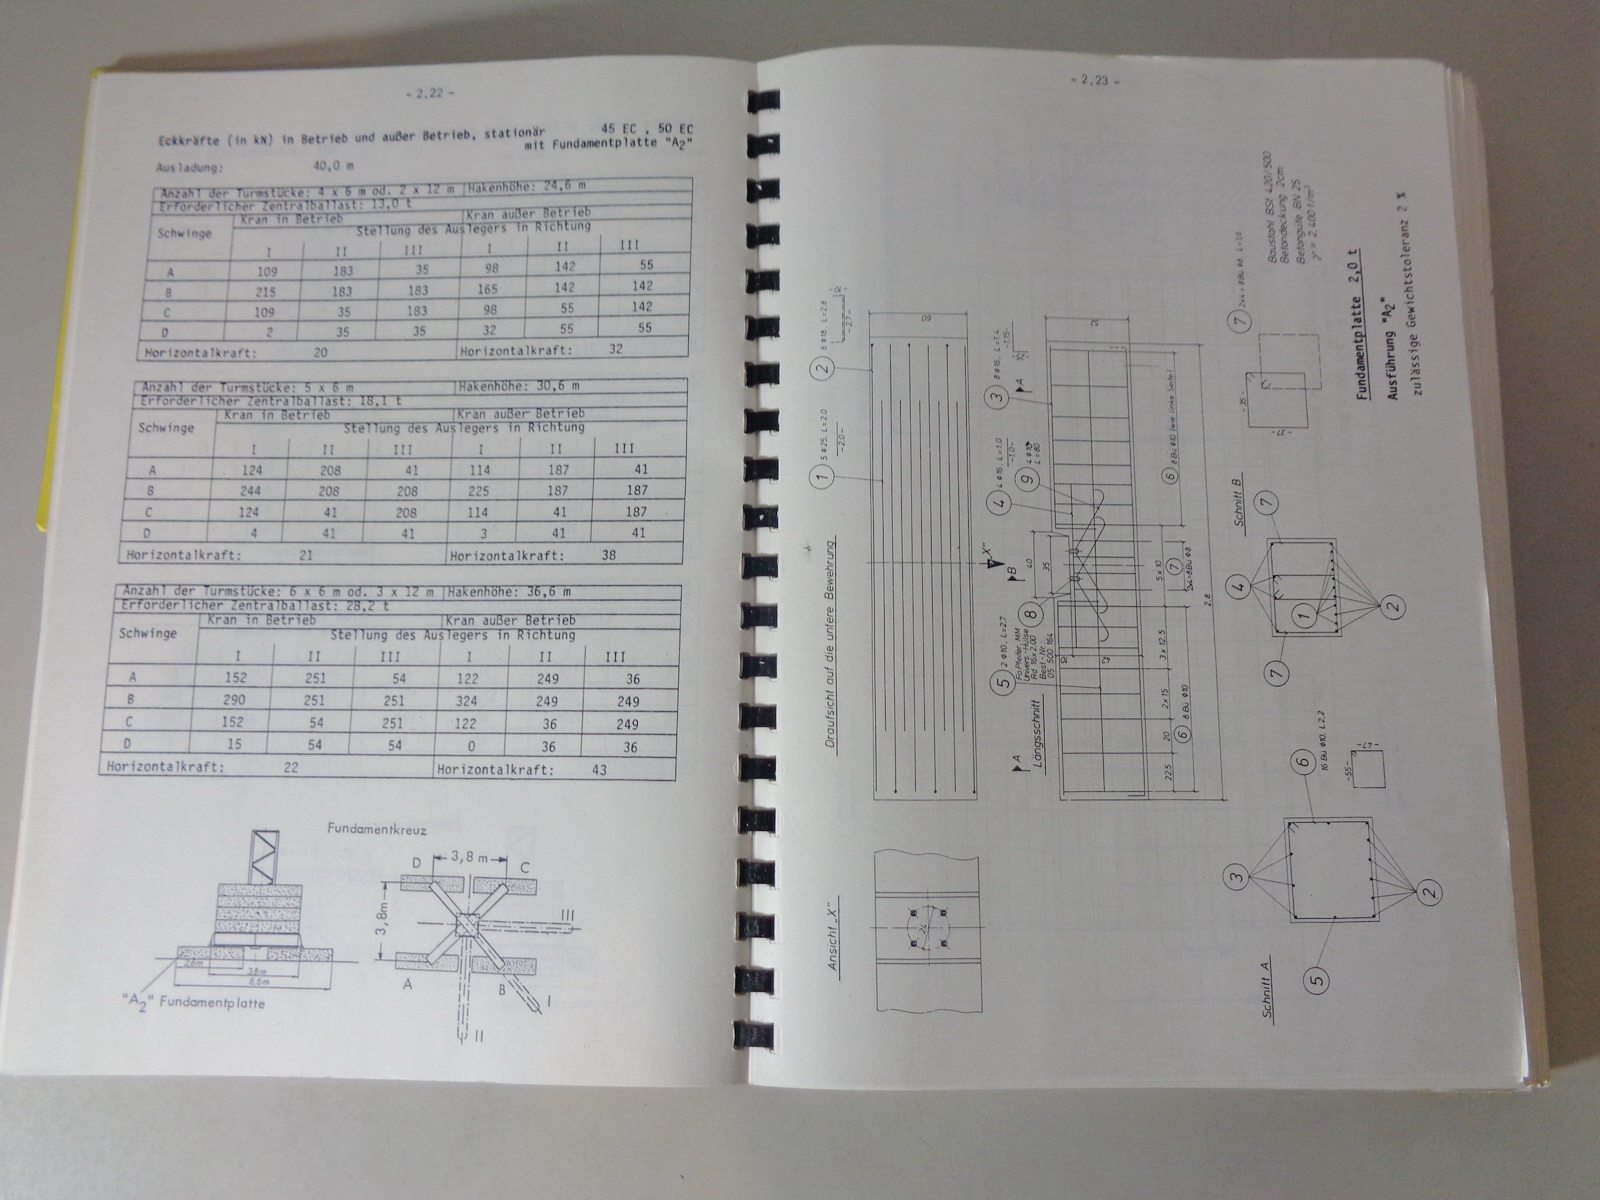 Technische Beschreibung Liebherr Turmdrehkran 45 EC von 10/1987 Datenblatt 